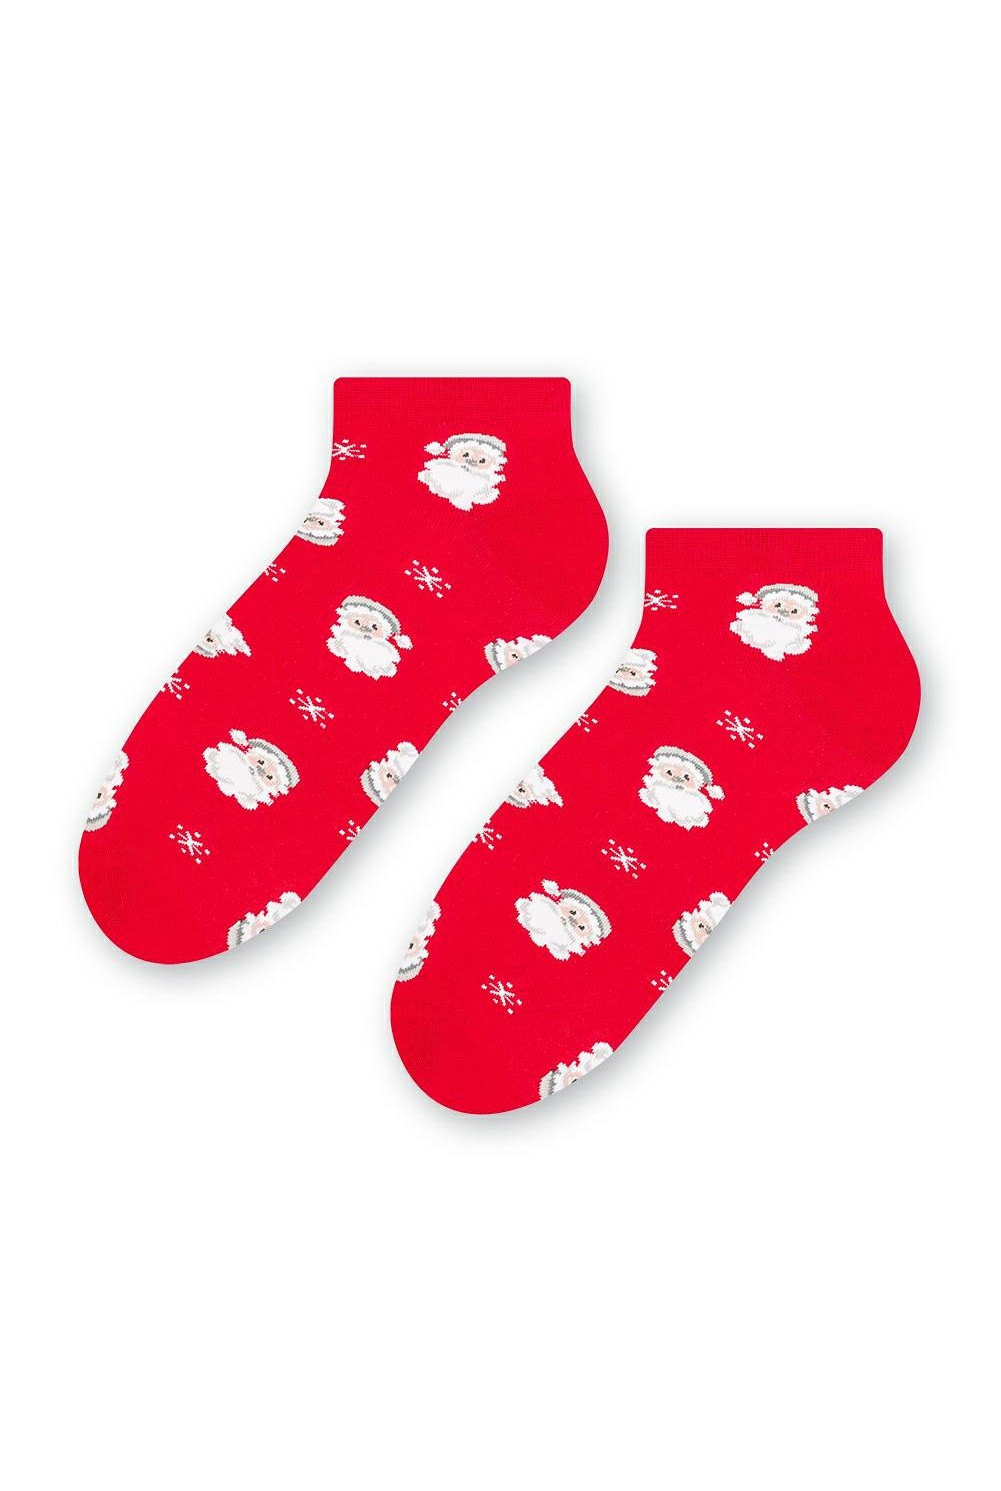 Dámské vánoční ponožky Steven art.136 35-40 šedá tmavá melanž 35-37